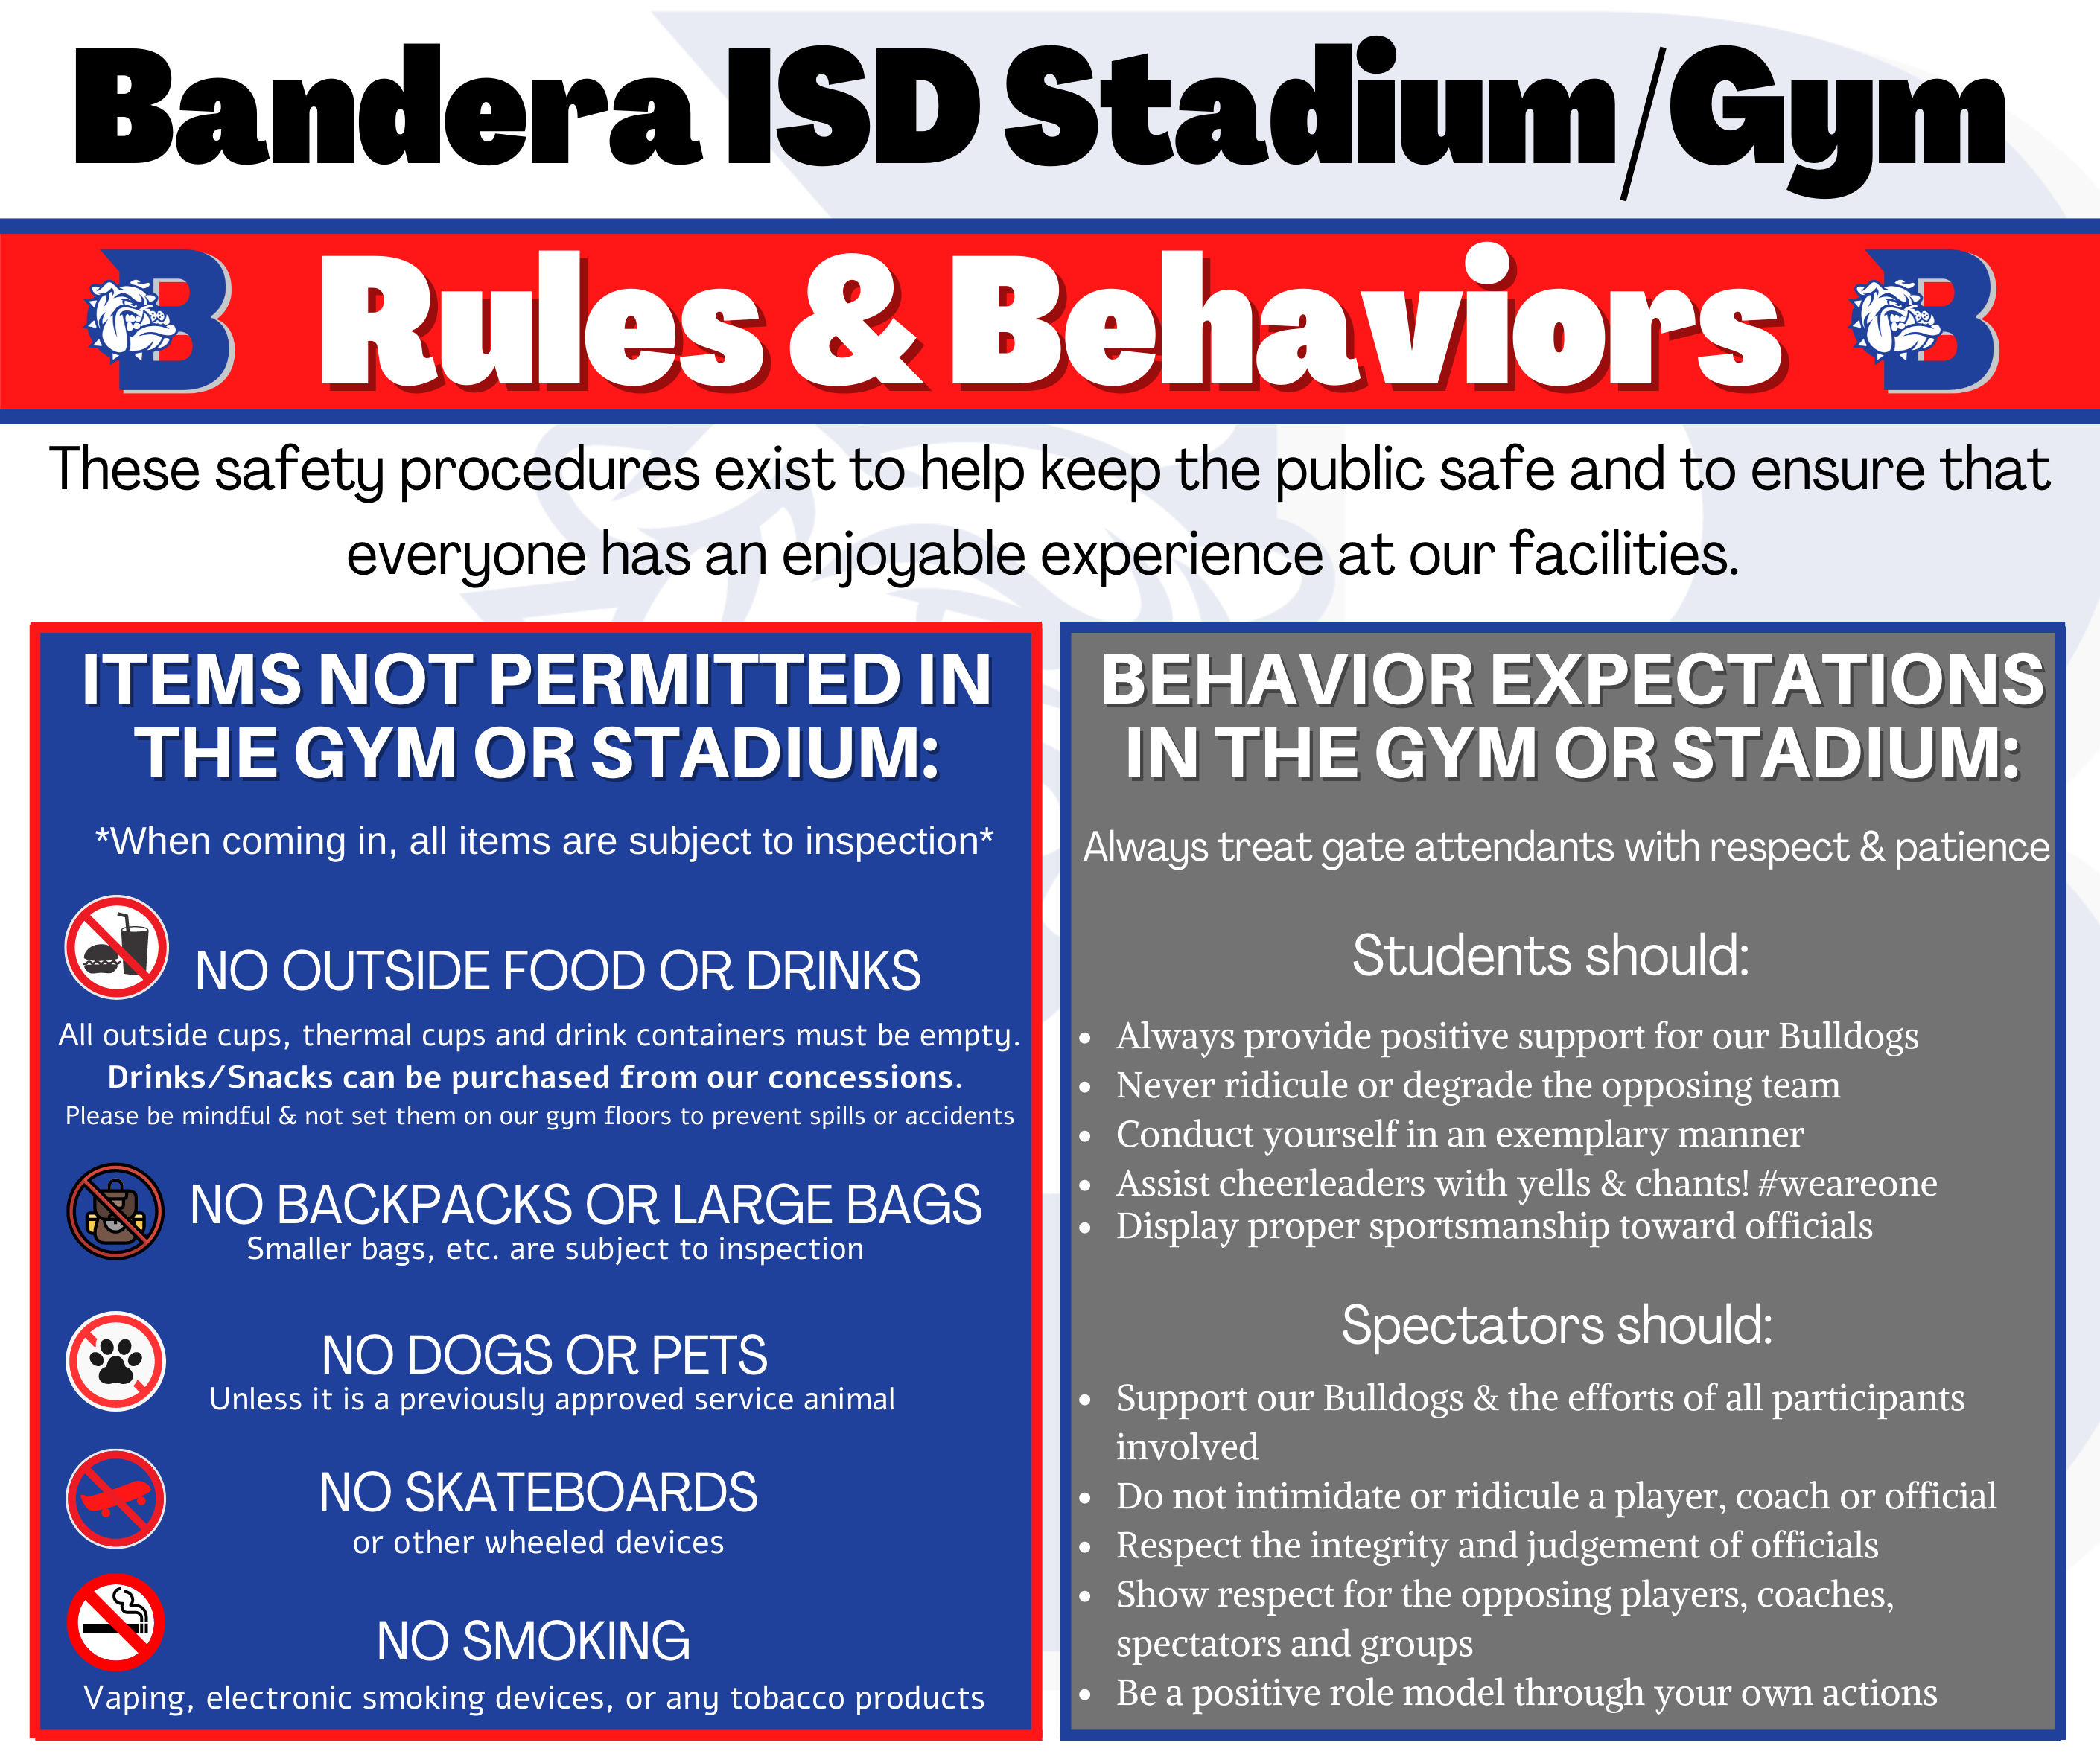 Stadium rules